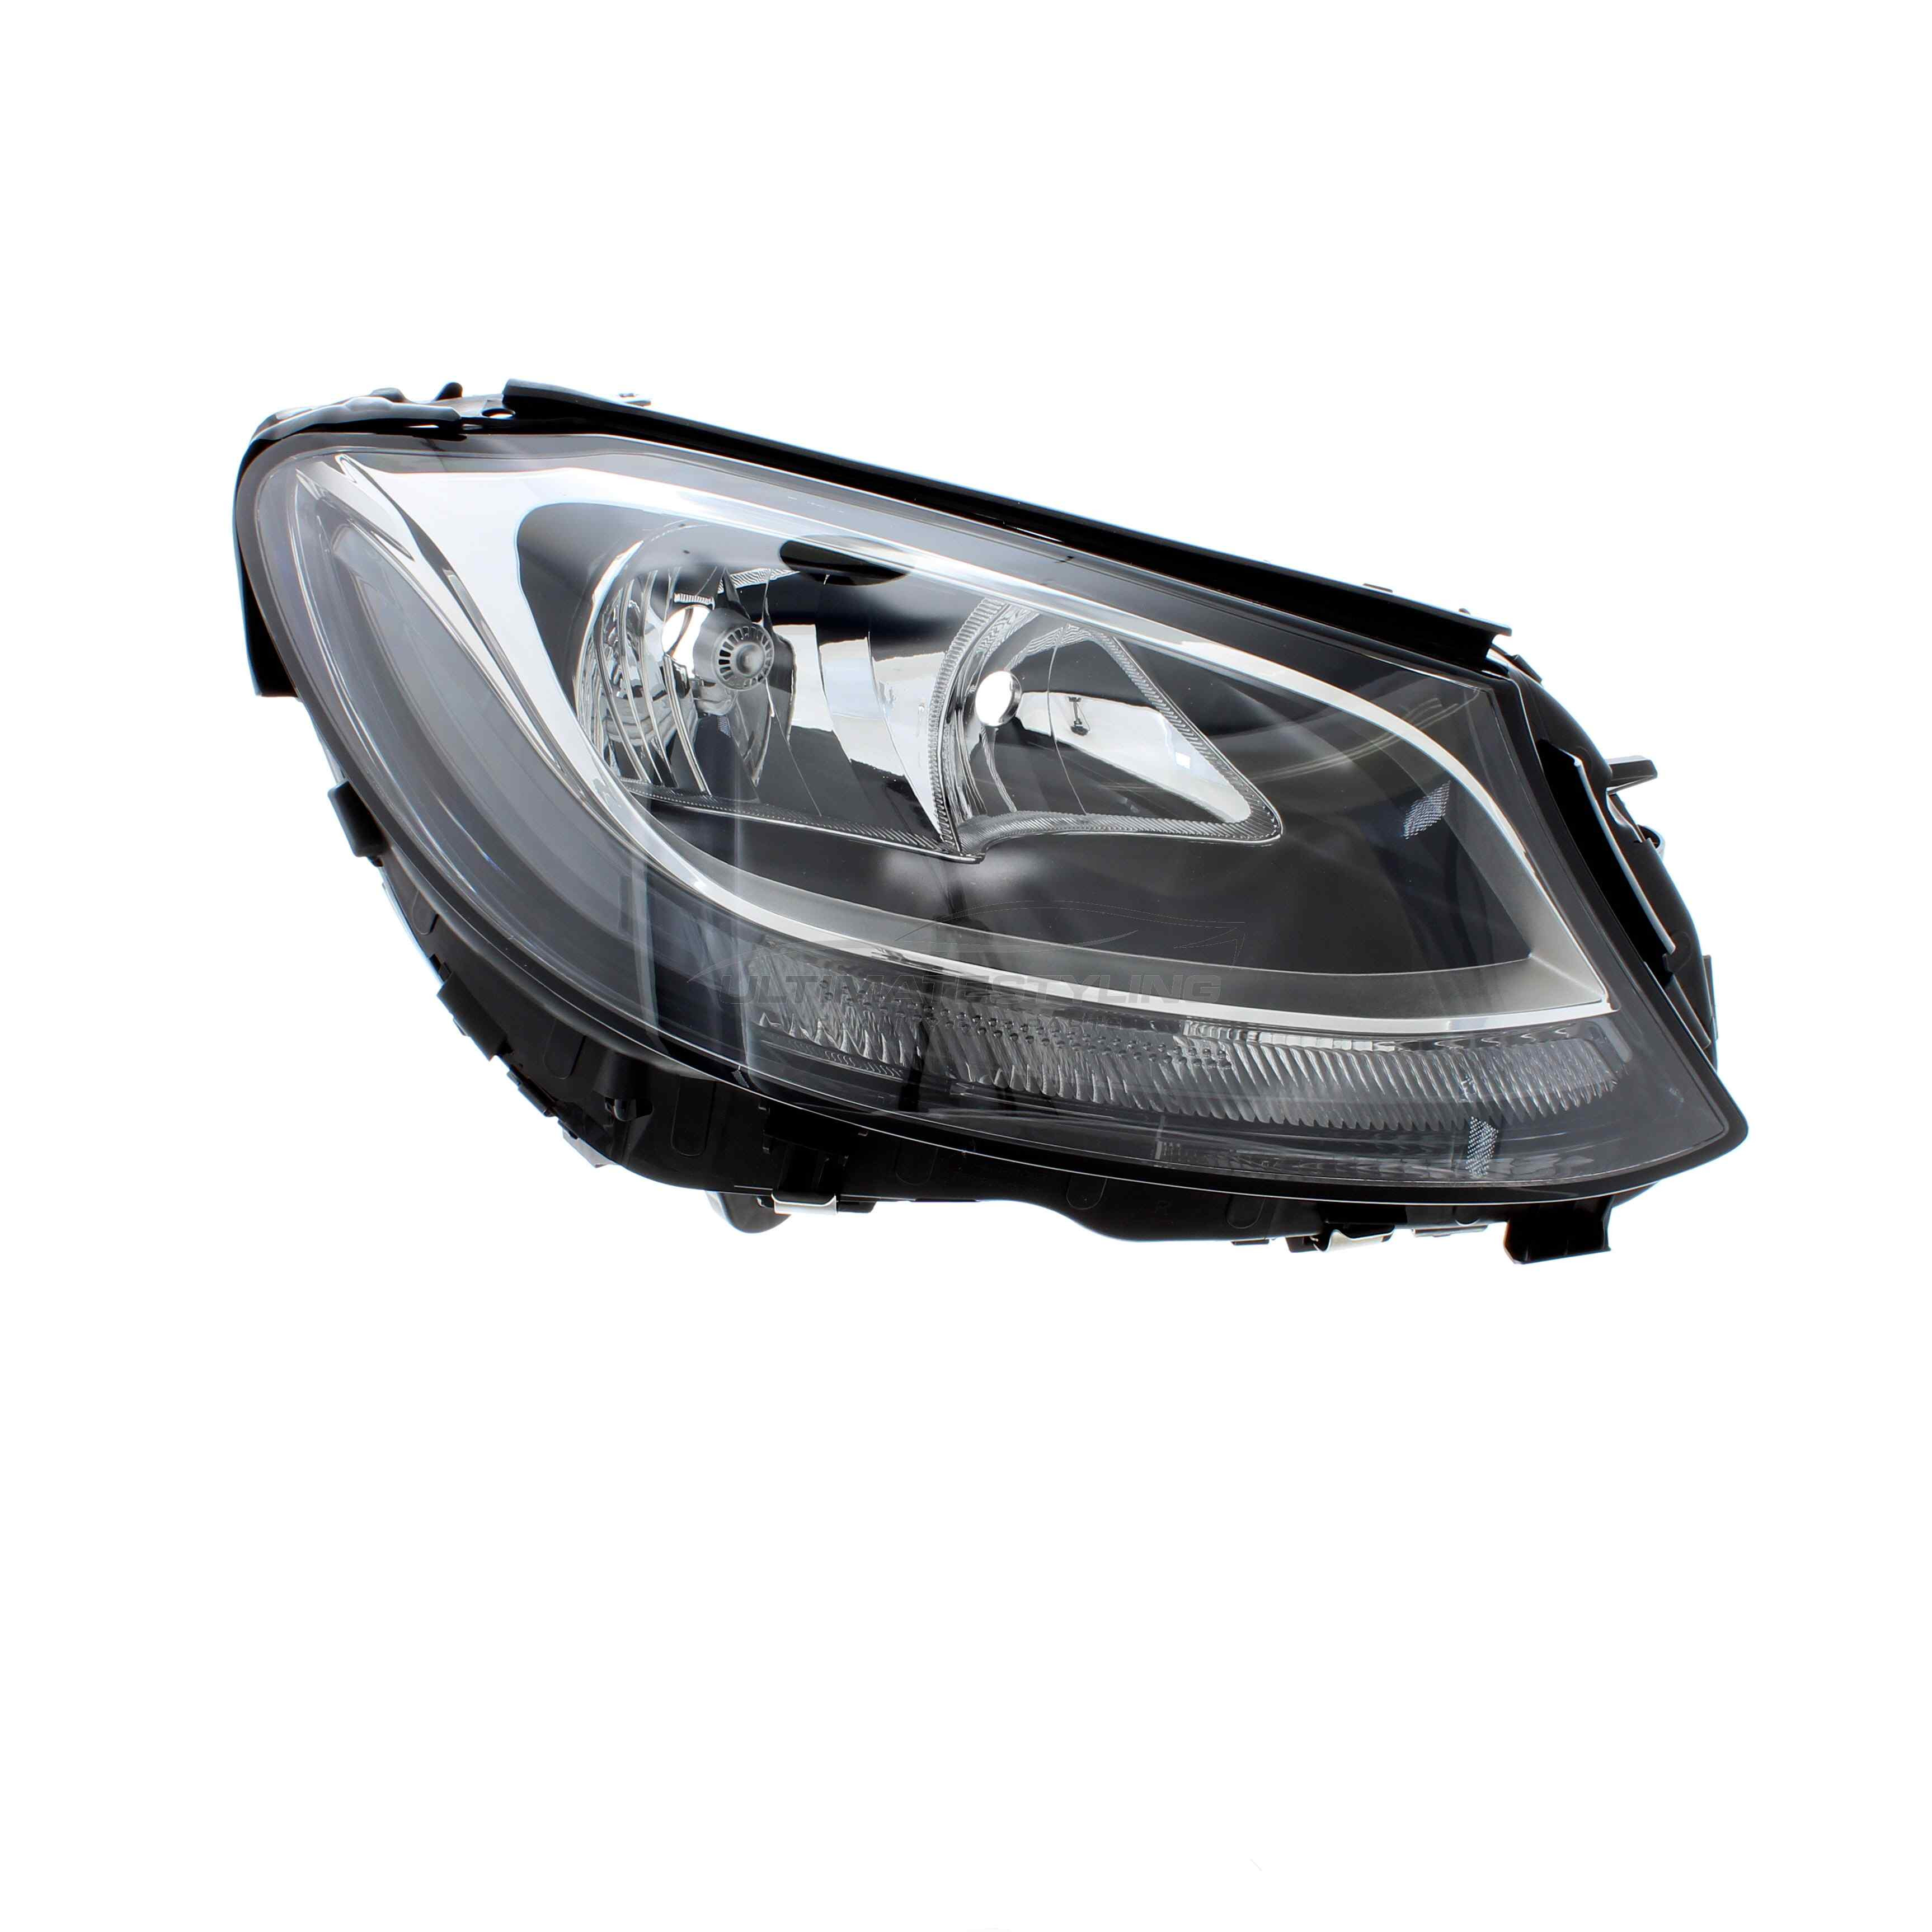 Headlight / Headlamp for Mercedes Benz C Class